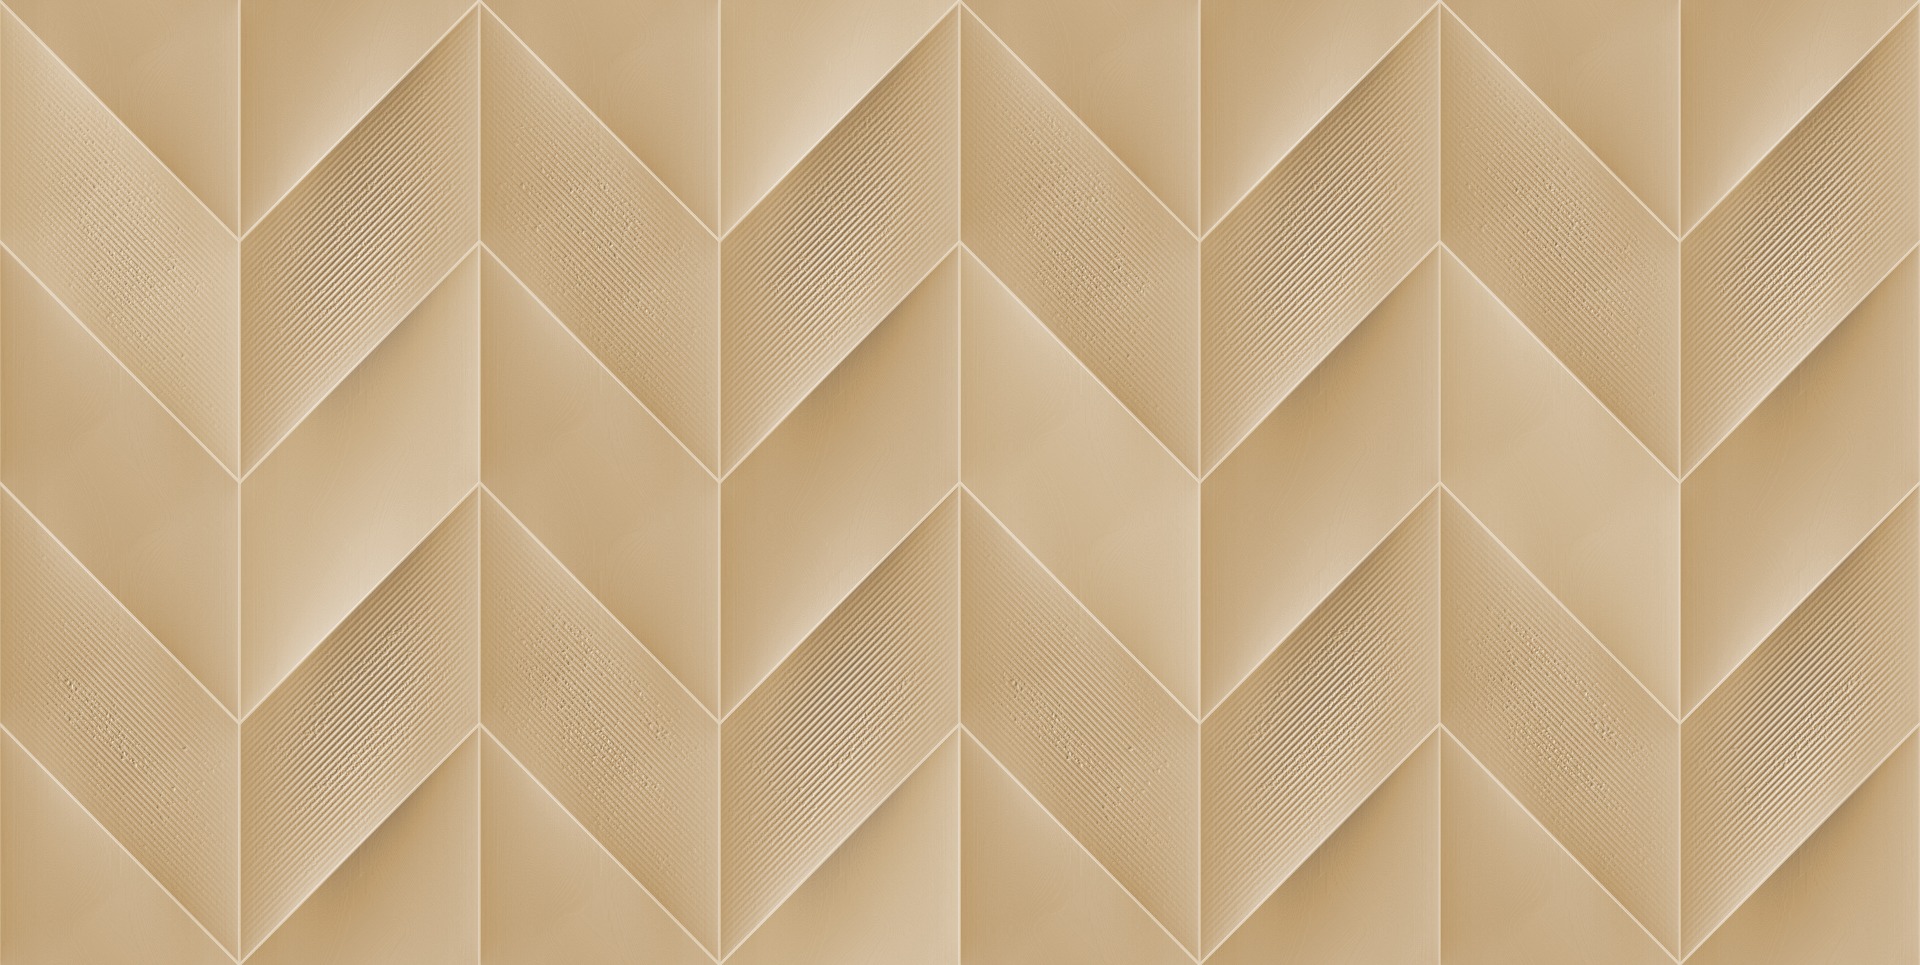 Estilo Tiles Collection for Bathroom Tiles, Kitchen Tiles, Accent Tiles